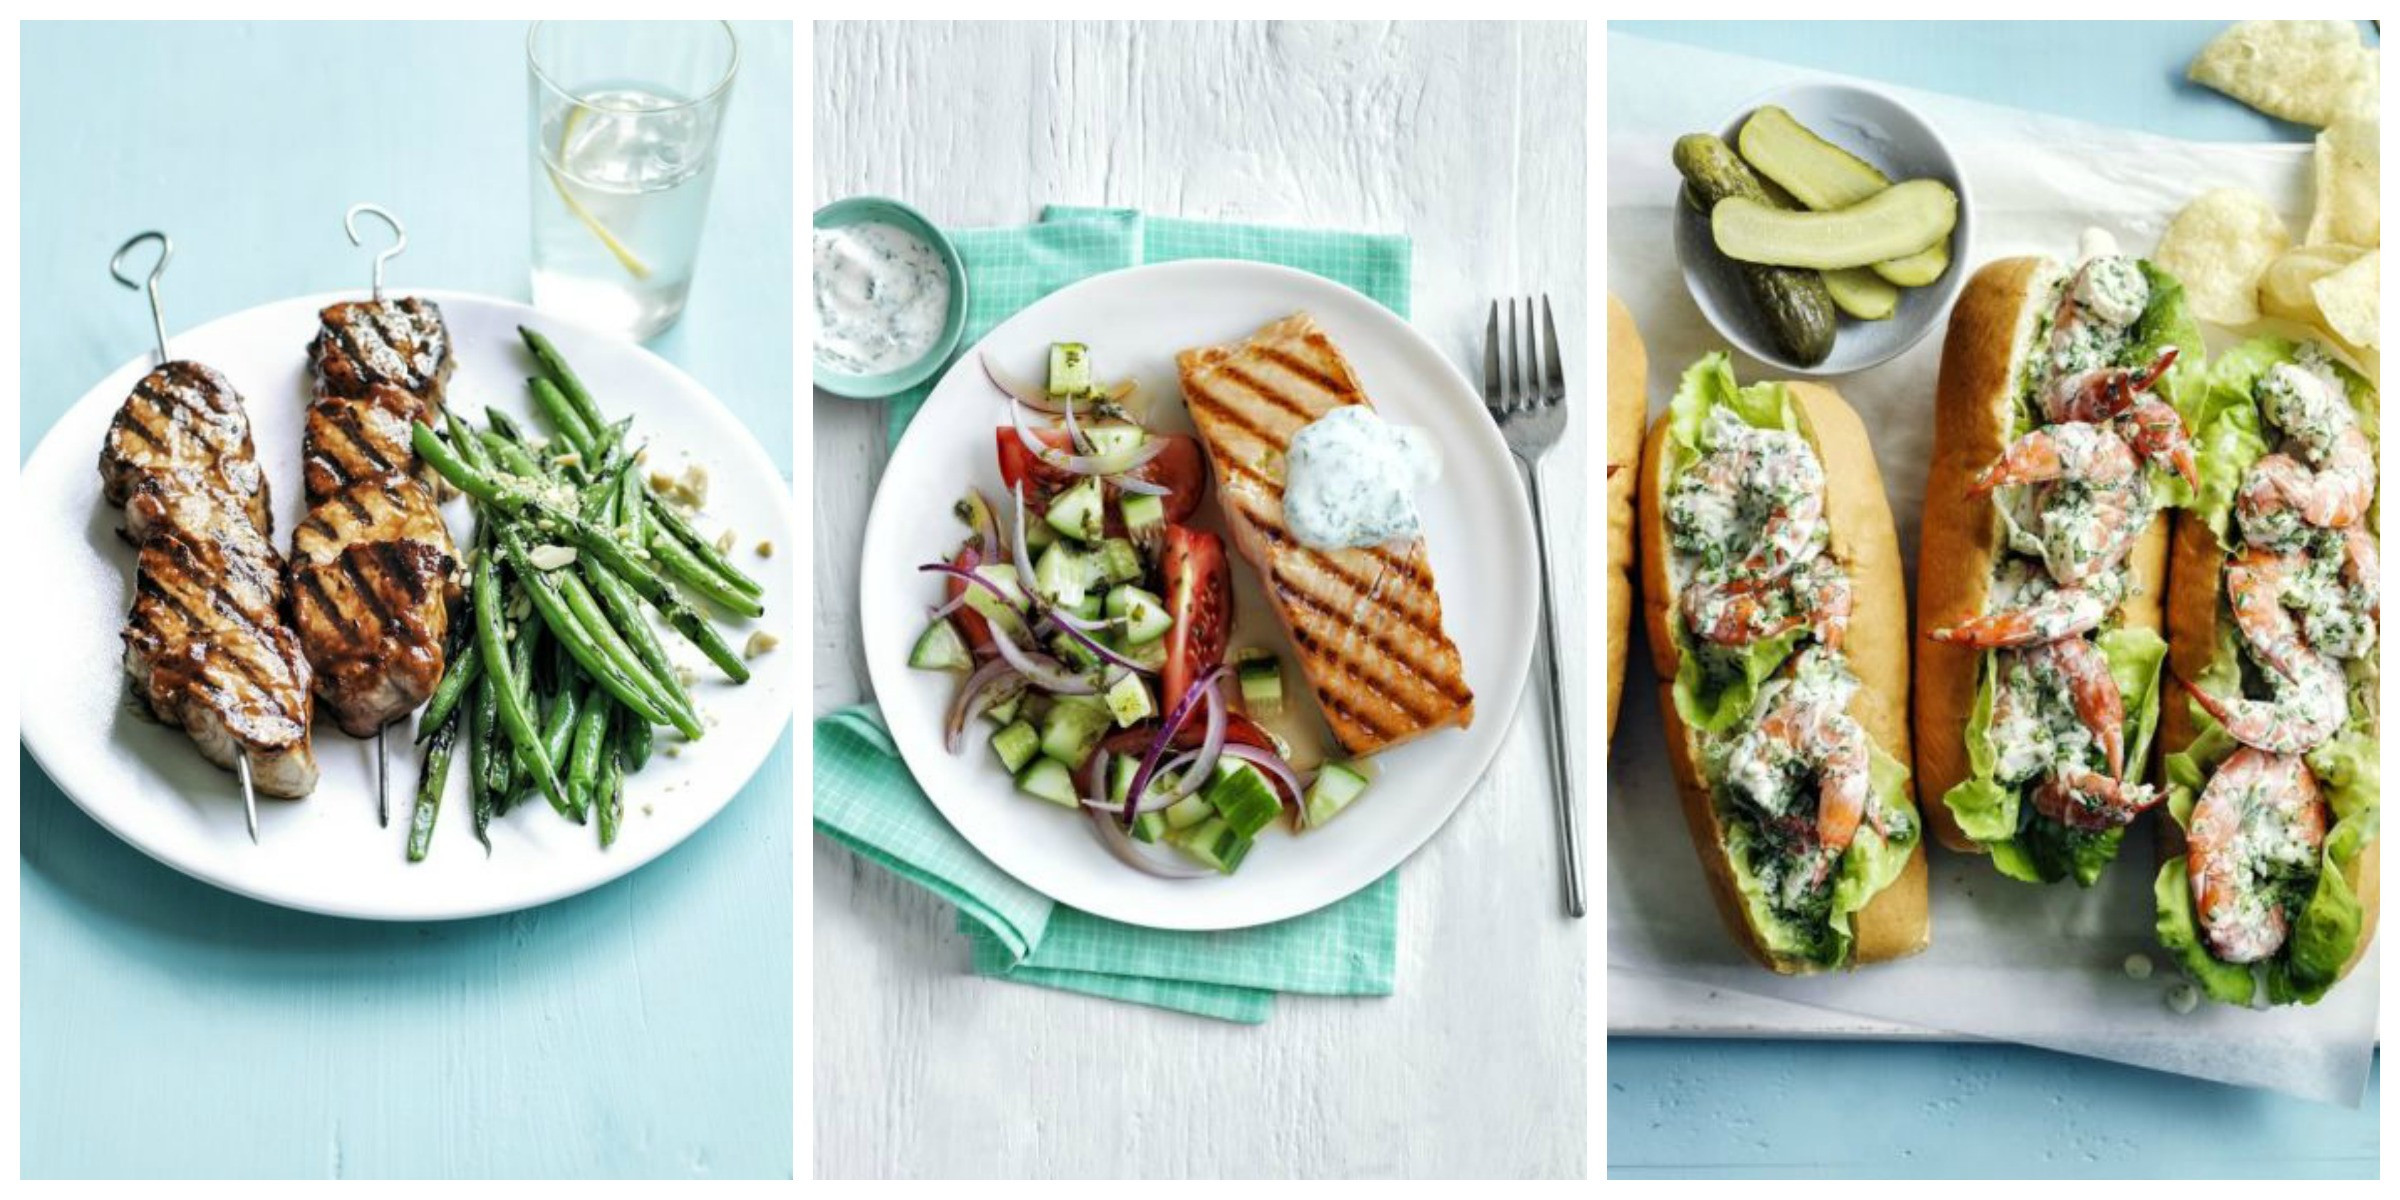 Light Dinner Ideas
 20 Healthy Dinner Ideas Recipes for Light Meals